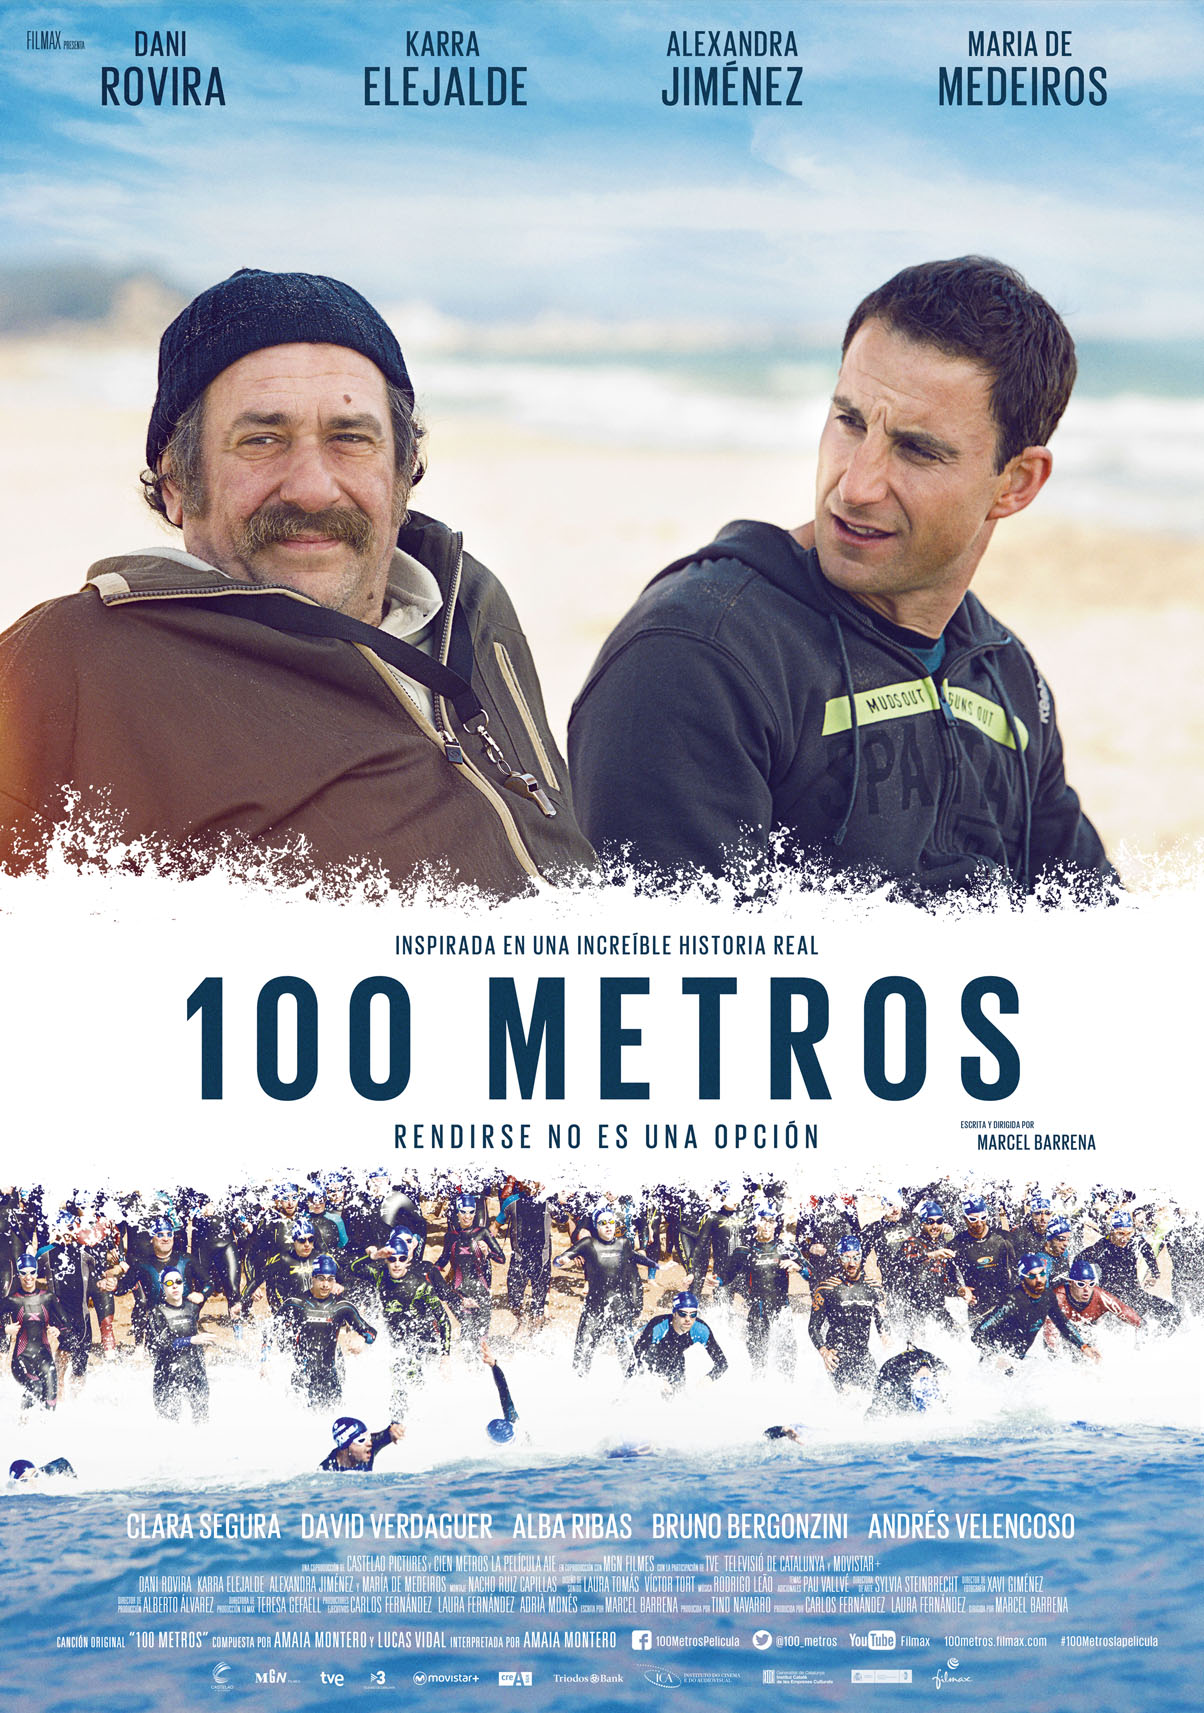 Giới thiệu phim 100 Meters - Câu chuyện về hy vọng và nghị lực sống - 100 metros film